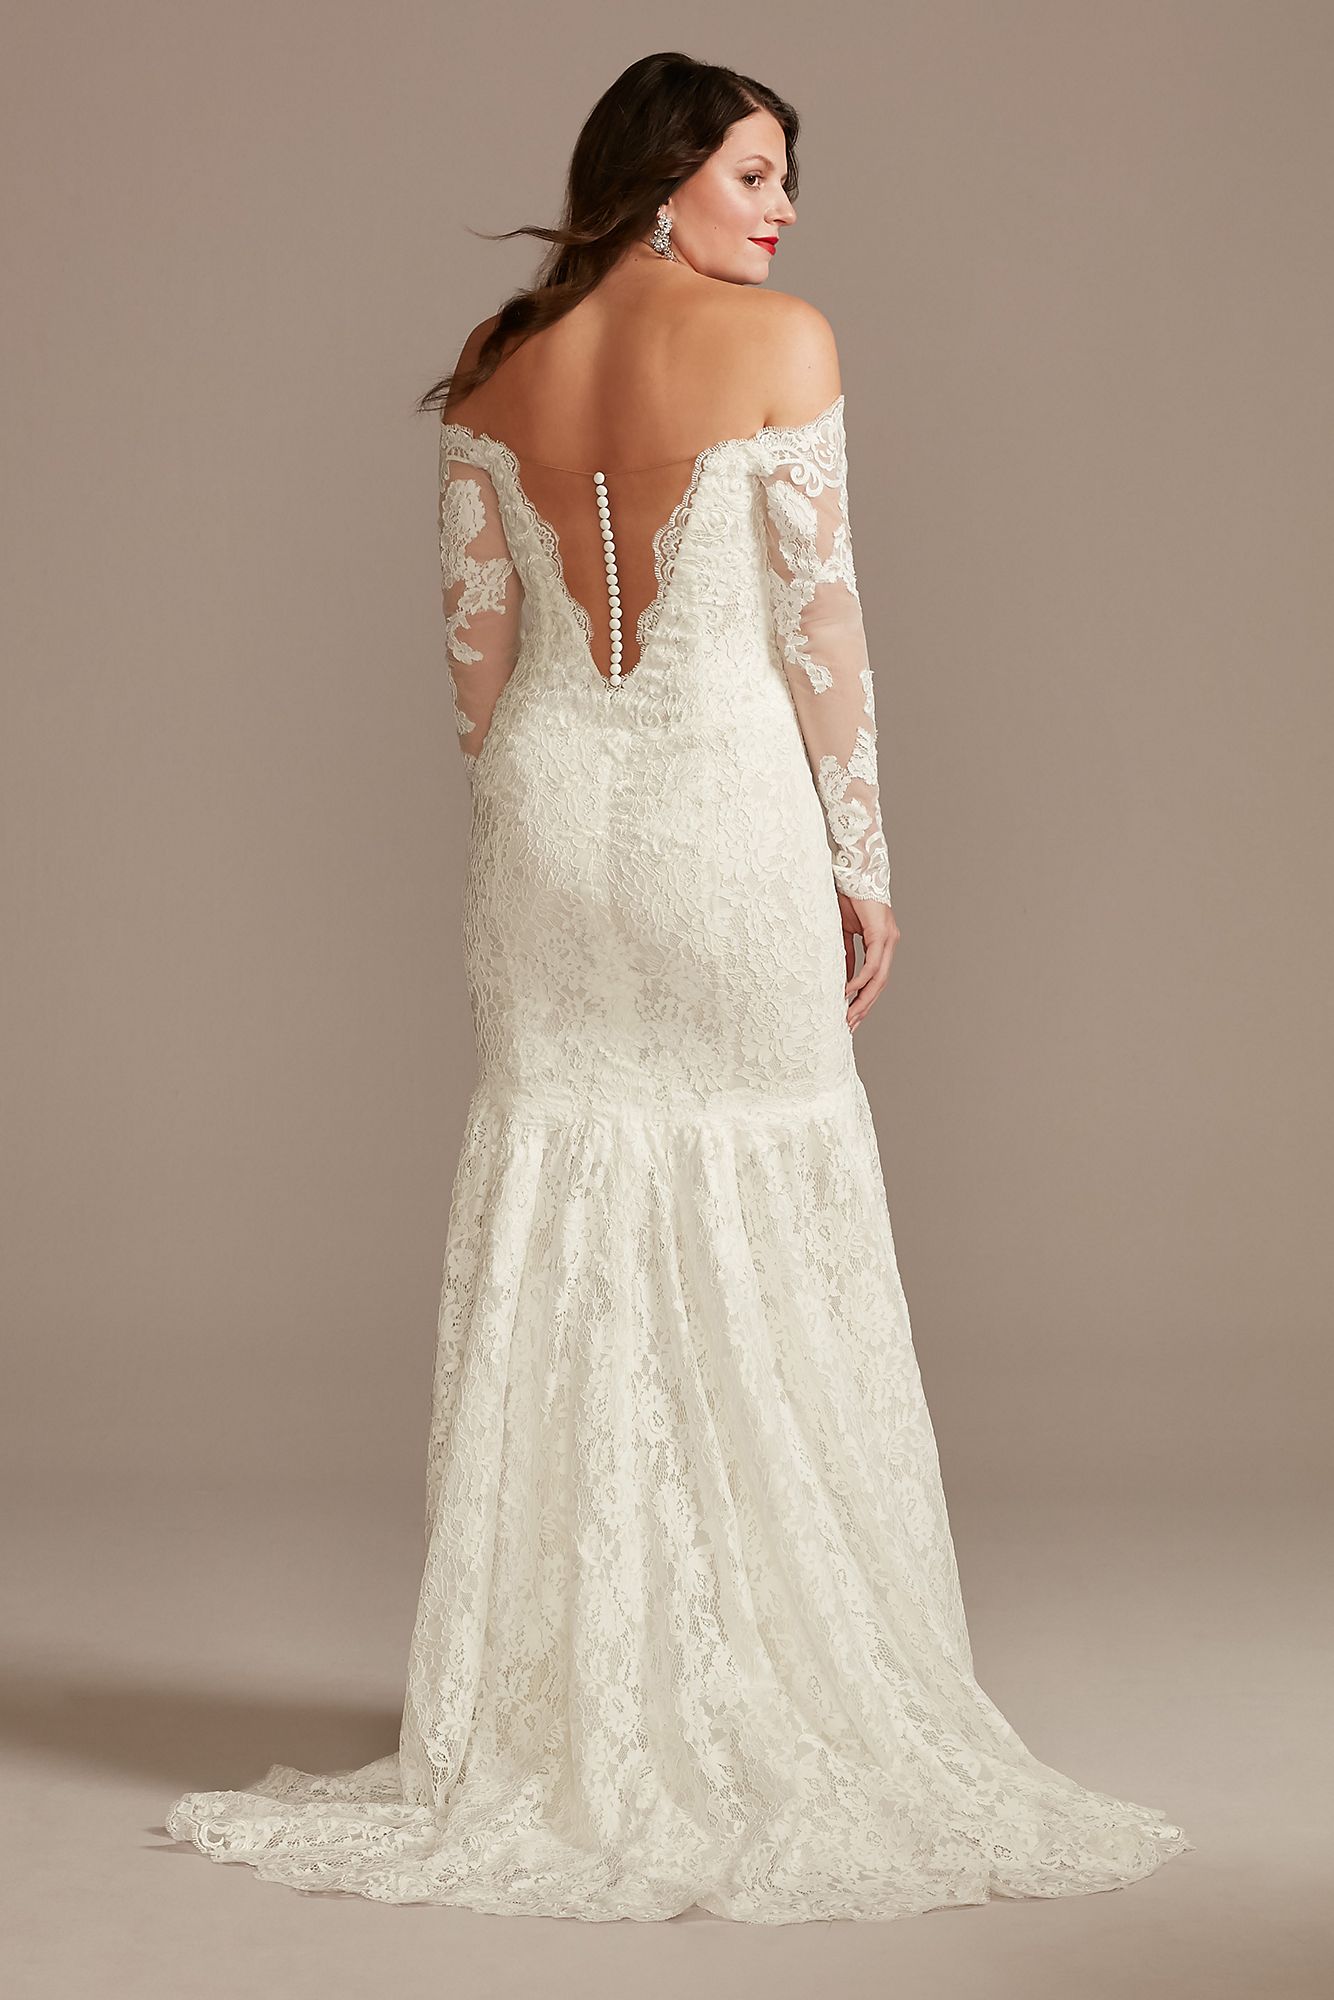 Long Sleeve Plunging Illusion Lace Wedding Dress Galina Signature SLSWG855